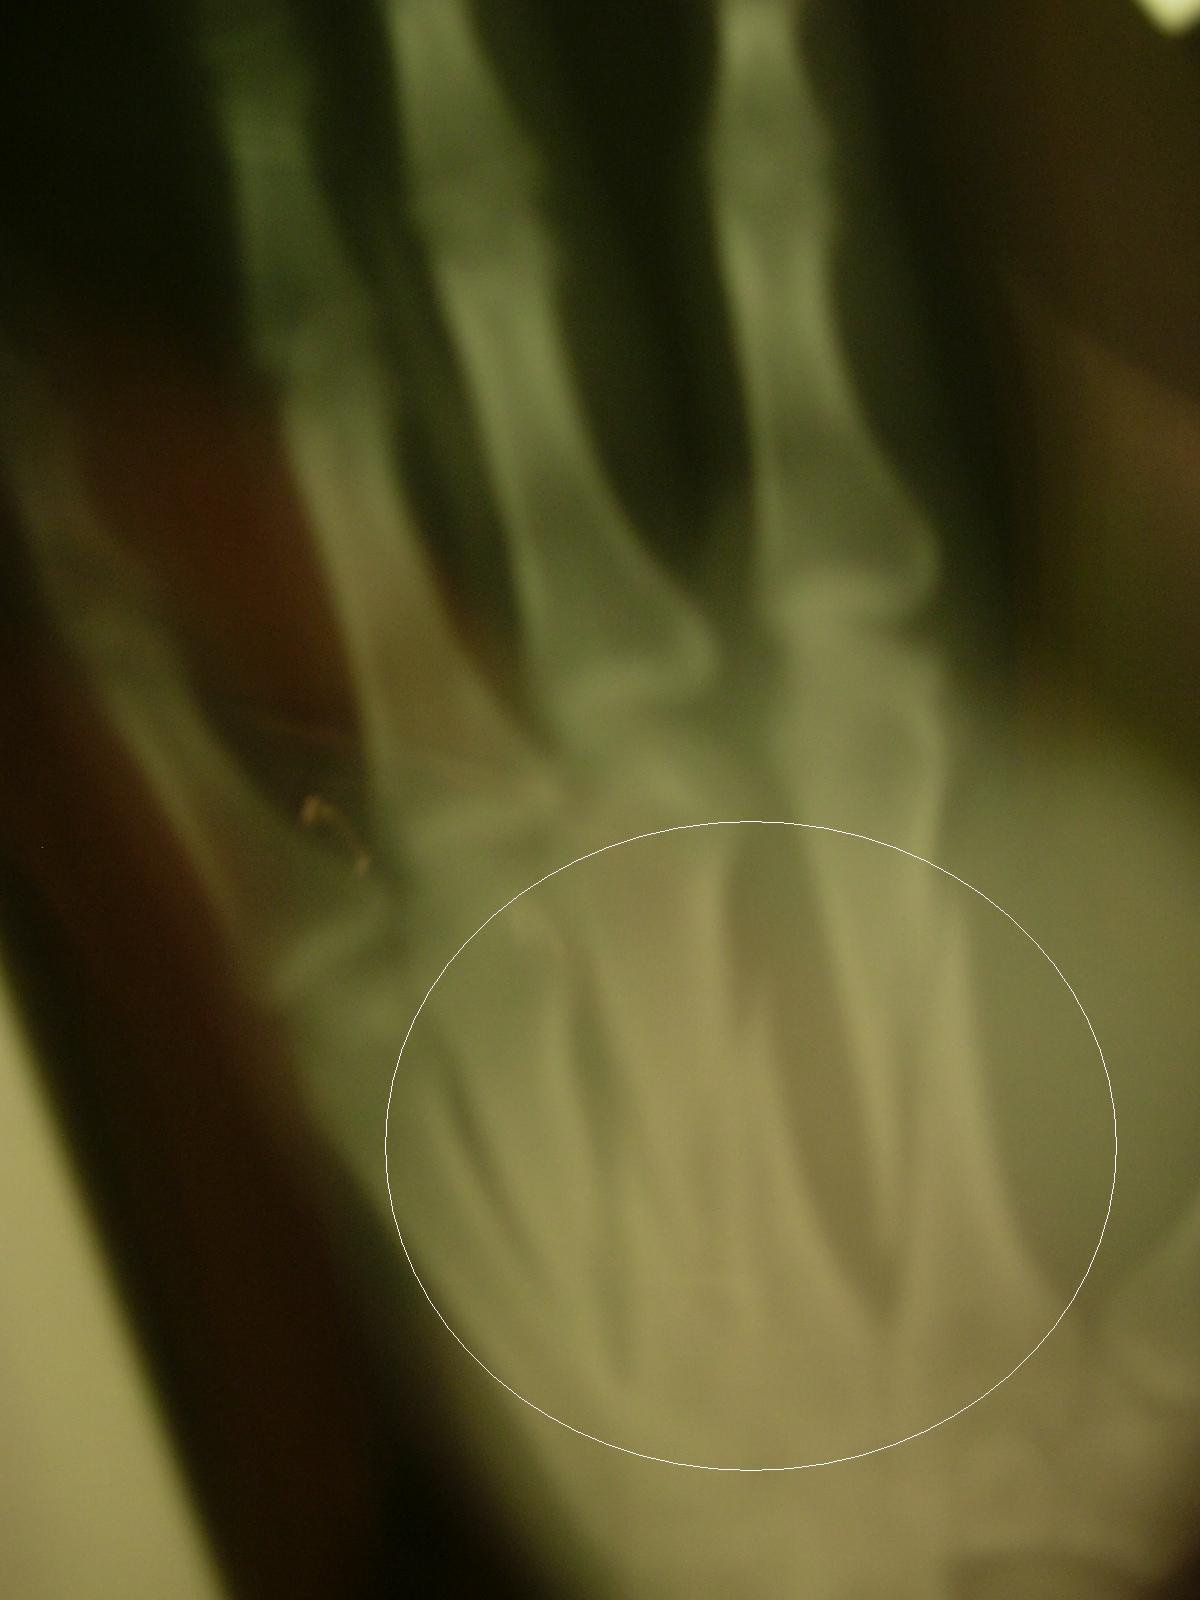 zavs severely broken hand